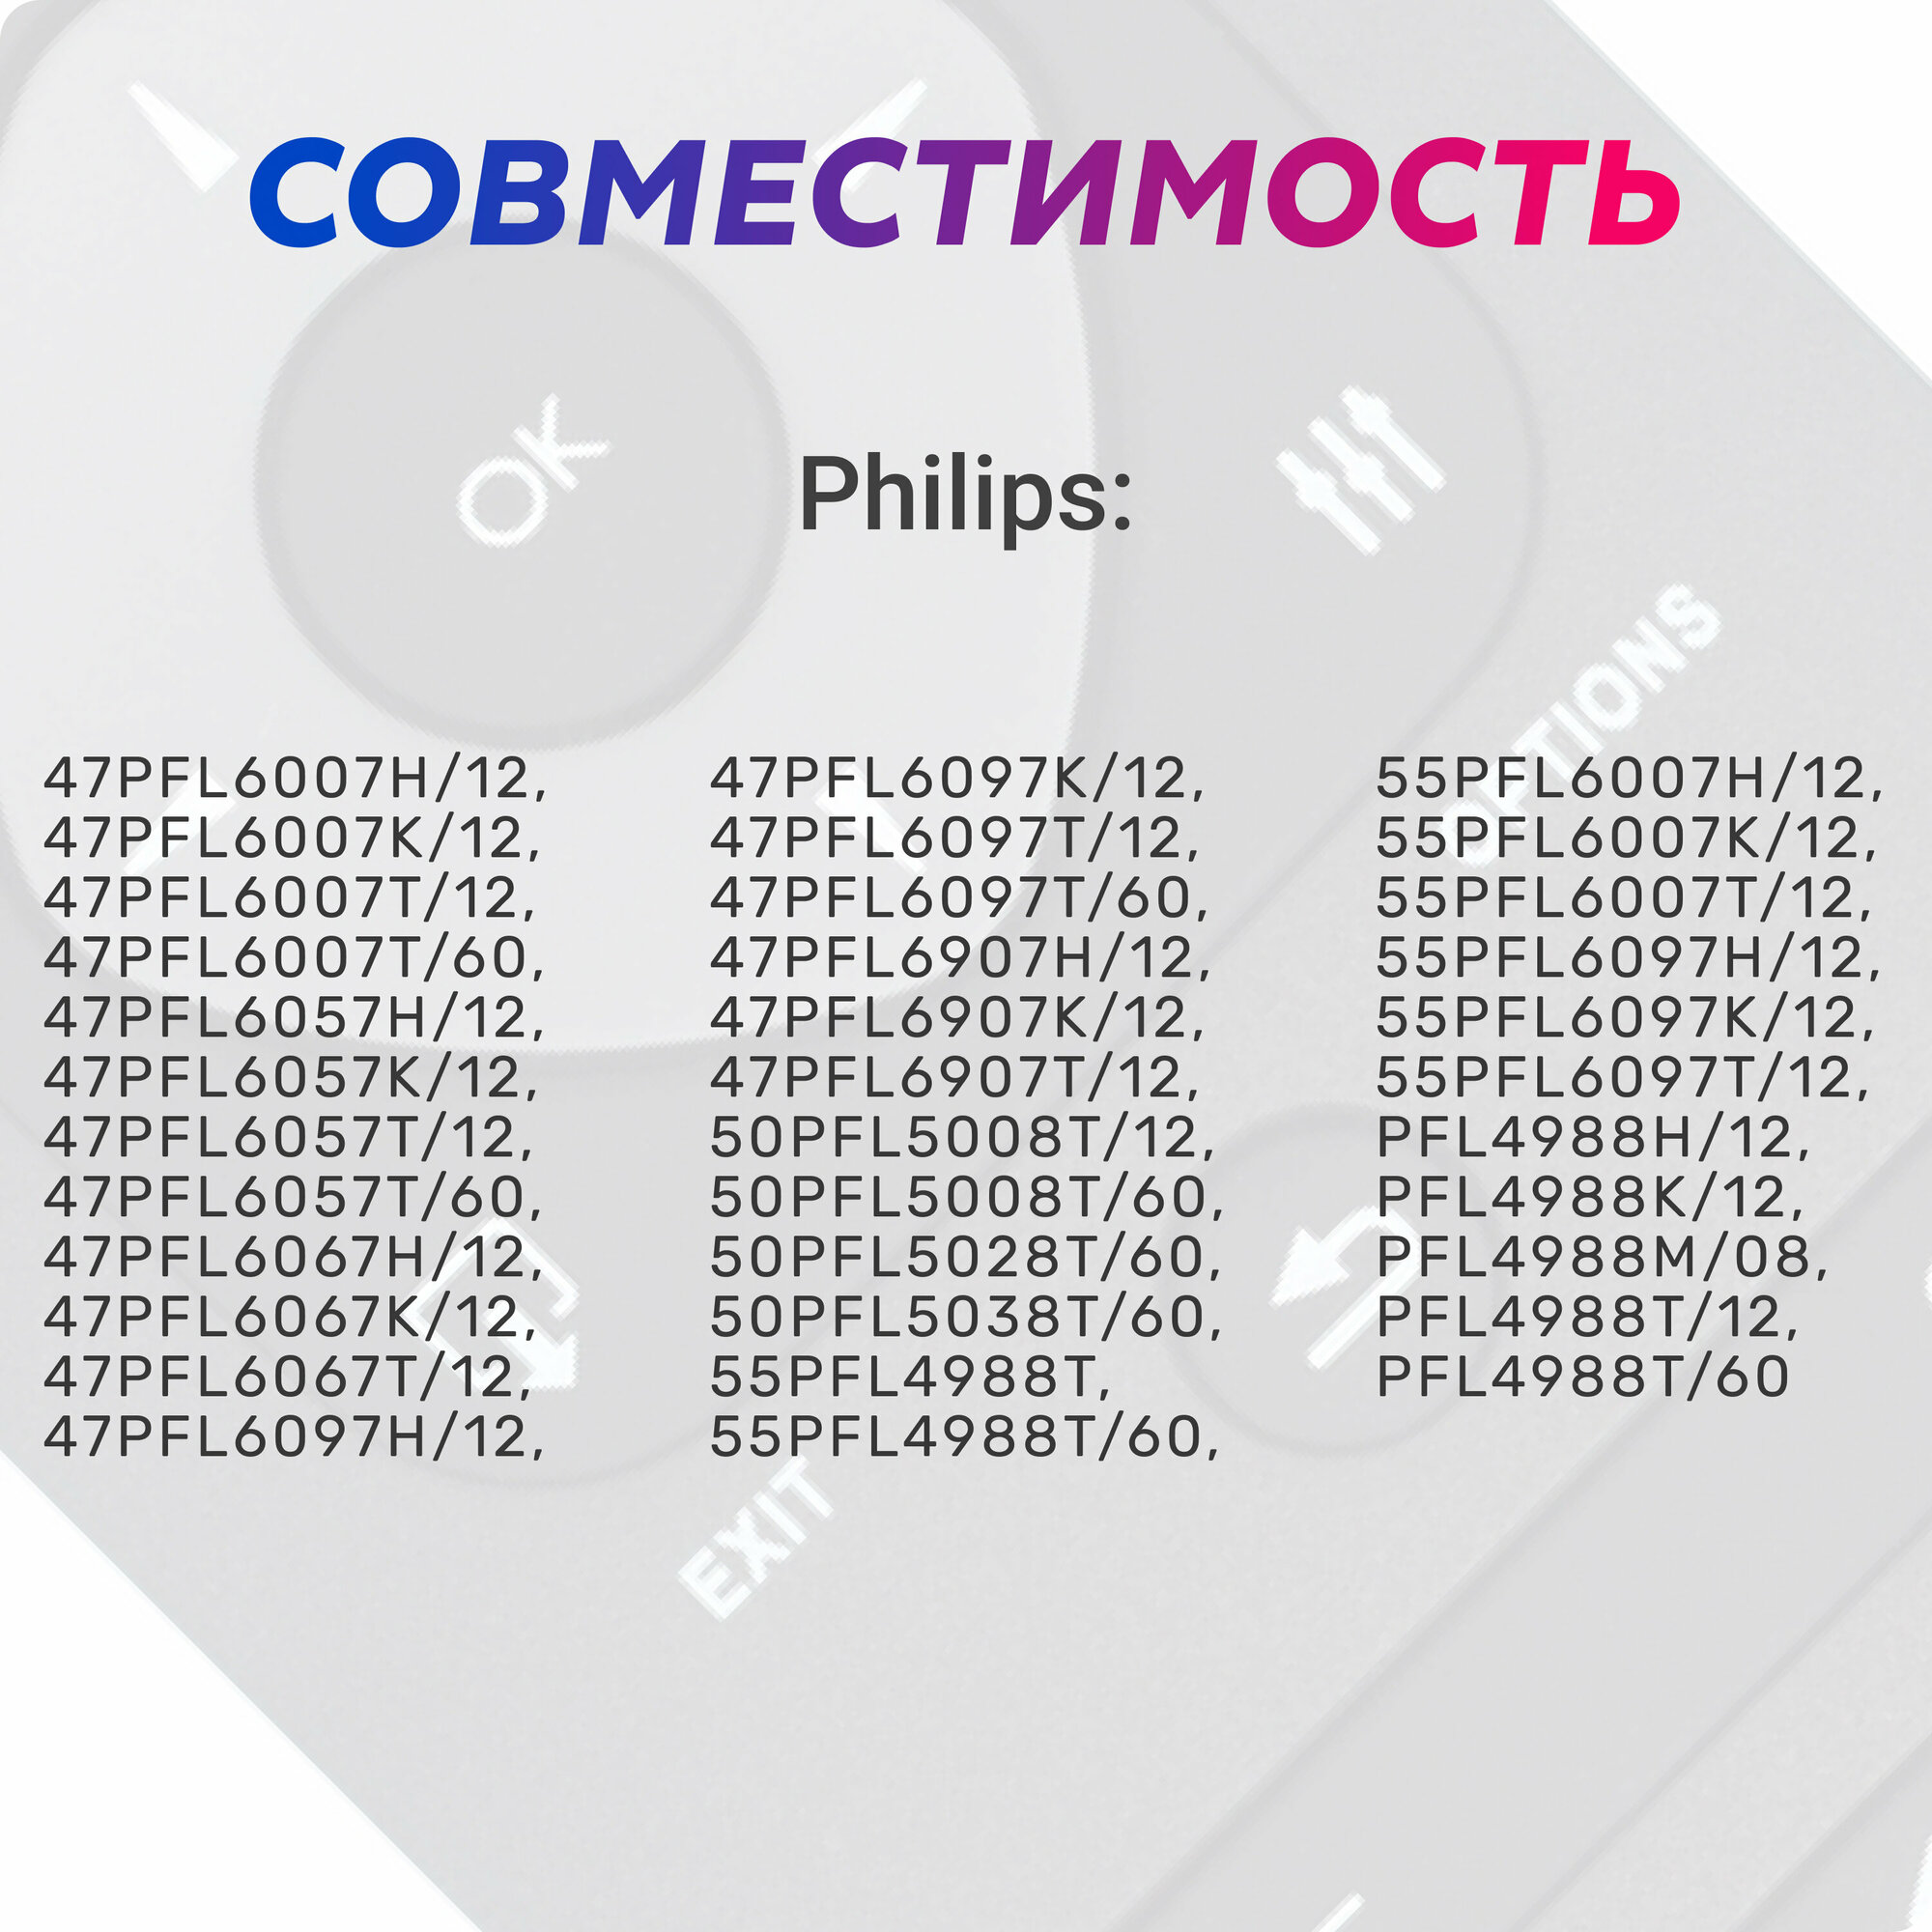 Пульт дистанционного управления Philips 2422 549 90477 ic 3D LED LCD TV YKF314-001 (HPH192) - фото №3